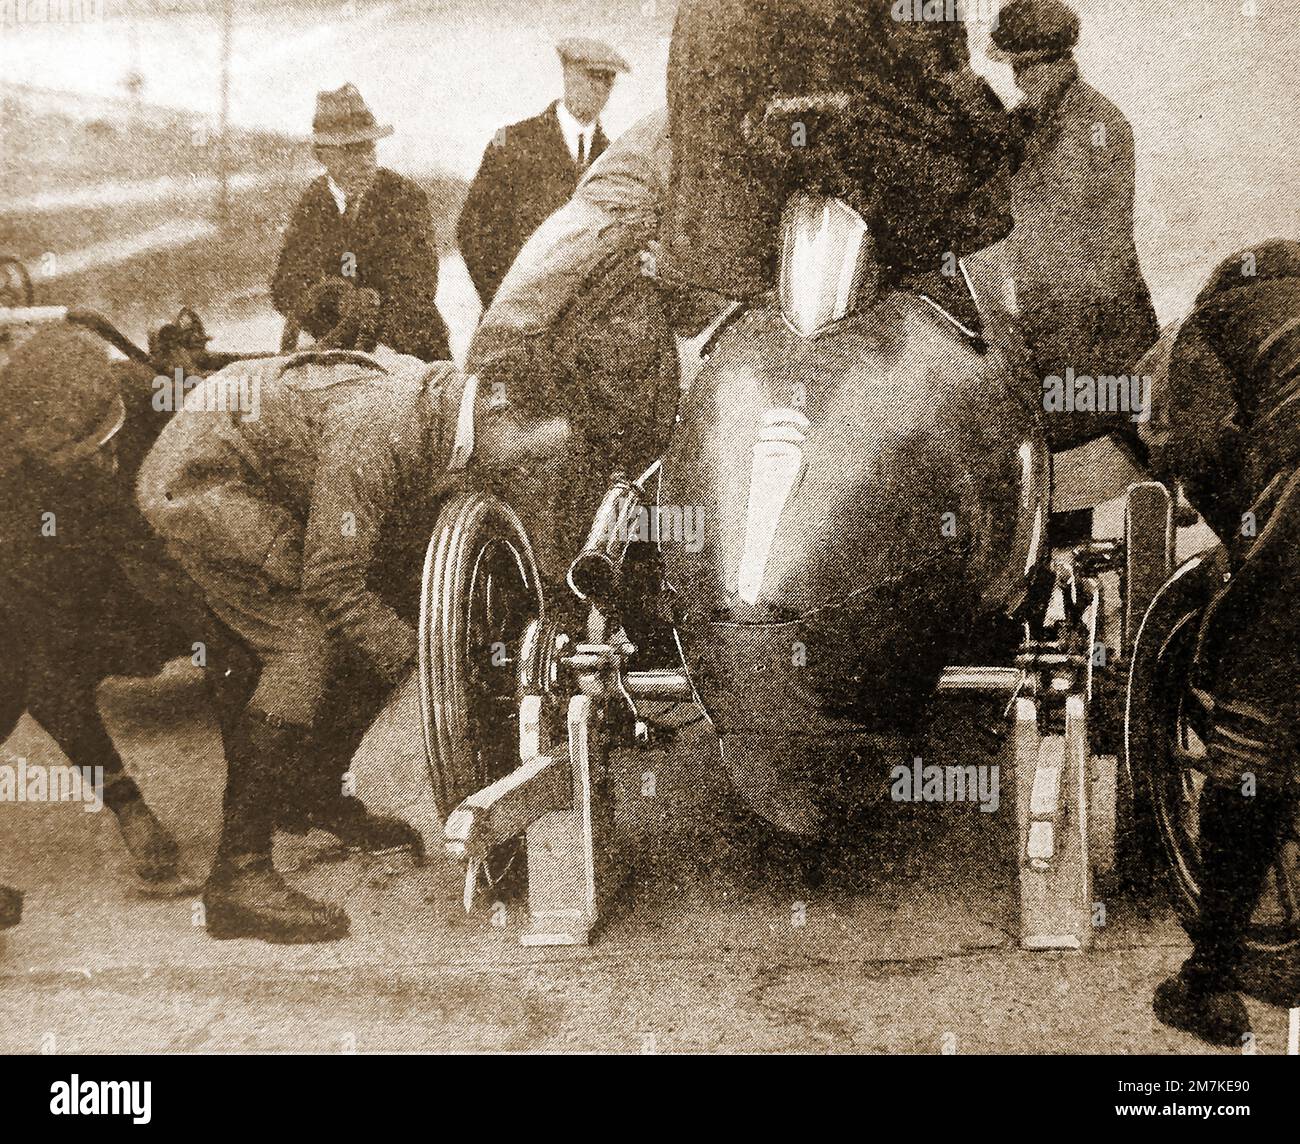 Une image de 1930 secondes de changement de pneus (mécanique) à l'arrêt d'une fosse sur un circuit de course automobile britannique Banque D'Images